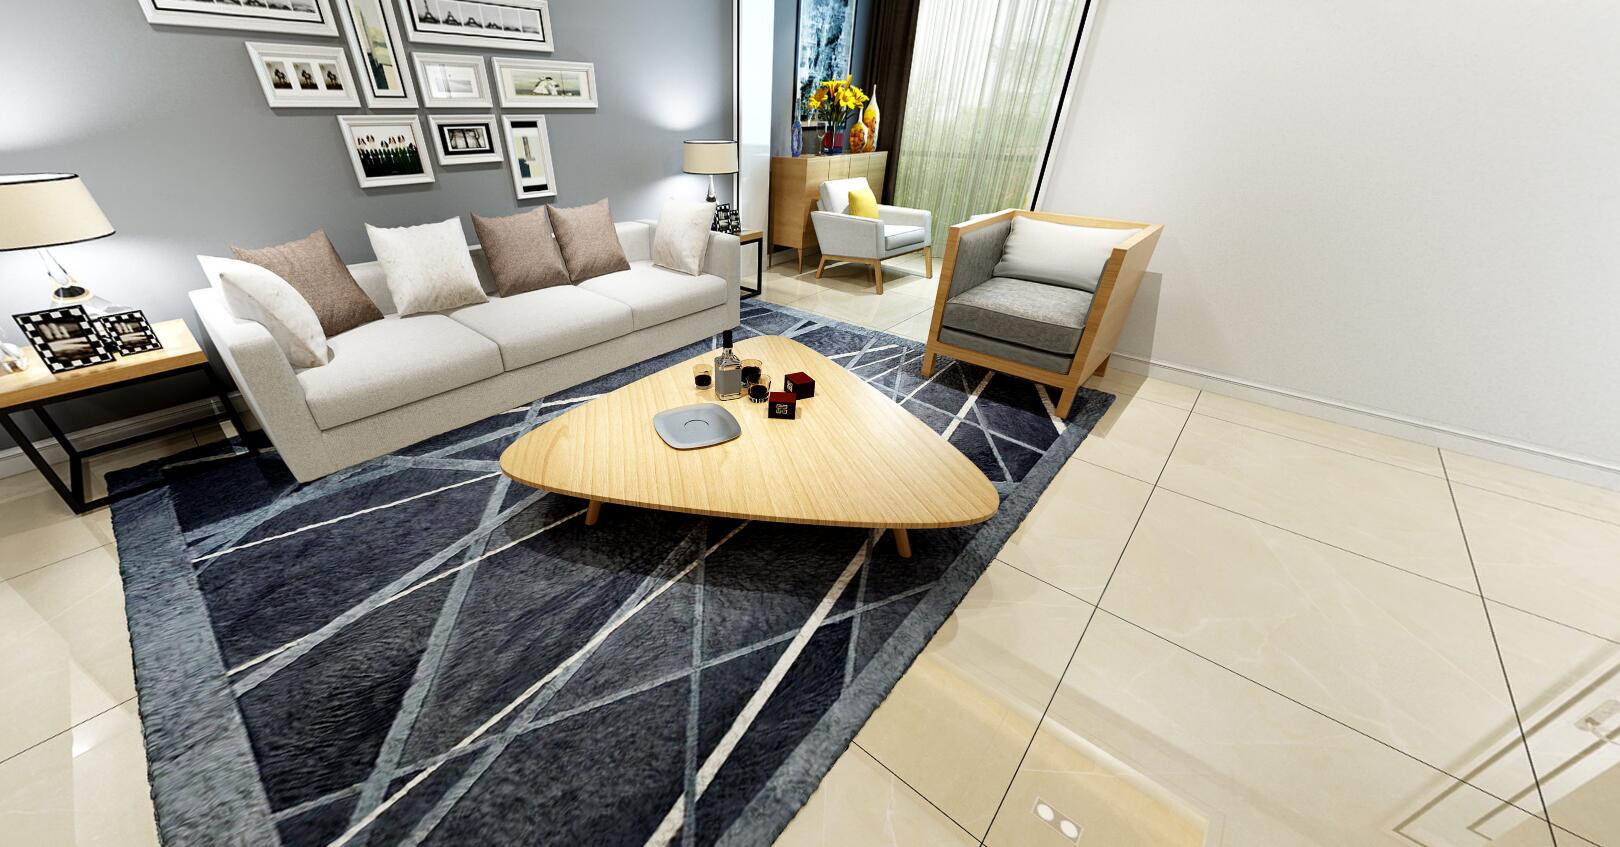 大理石瓷砖维纳斯黄IPGS90044客厅空间效果图1